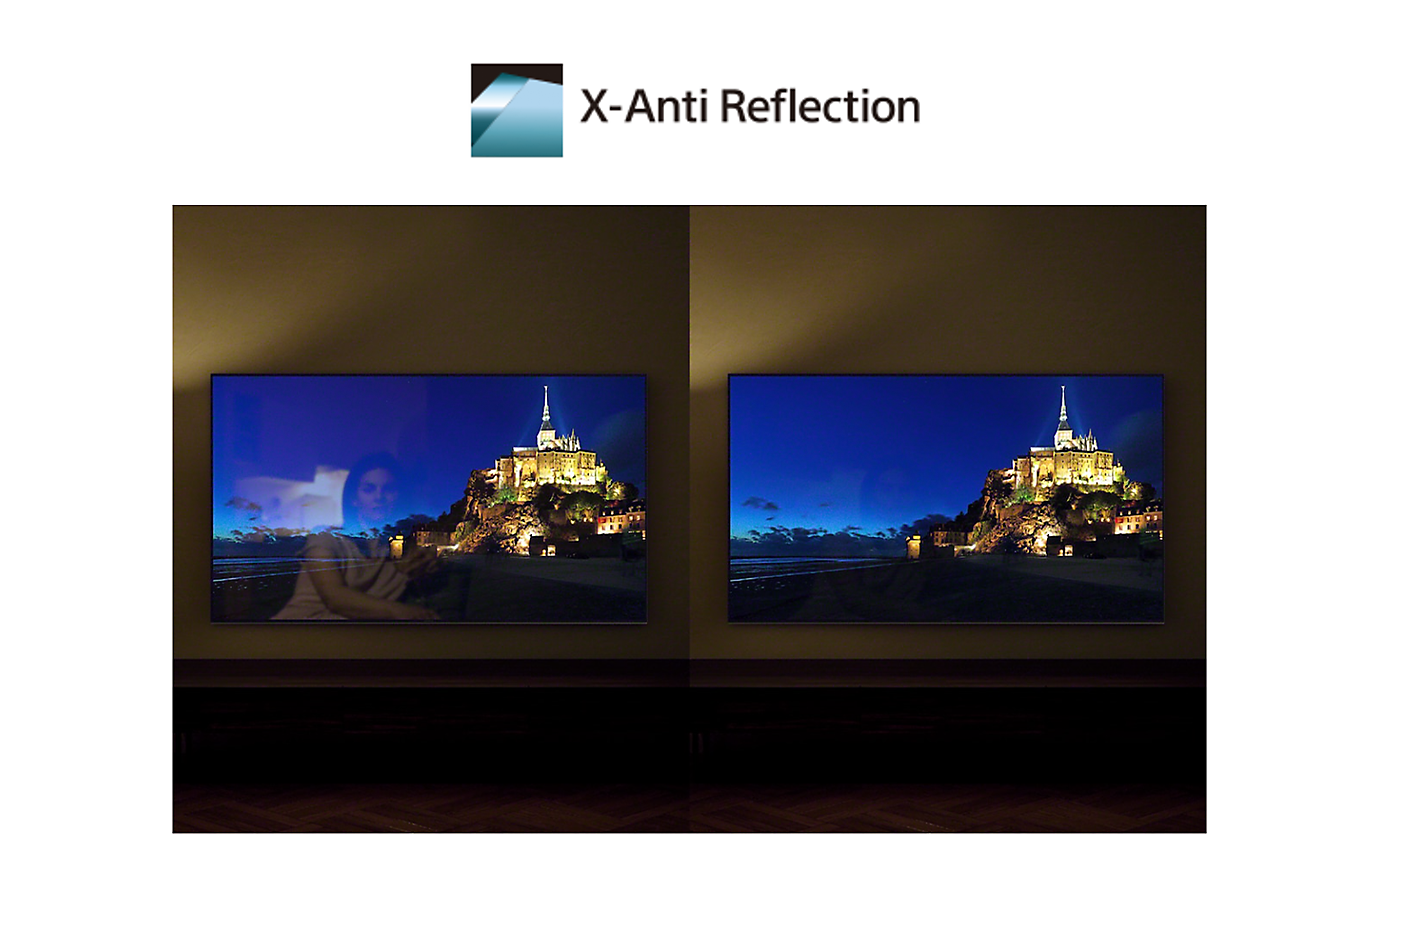 Ekranų palyginimas su „X-Anti Reflection“ funkcija ir be jos